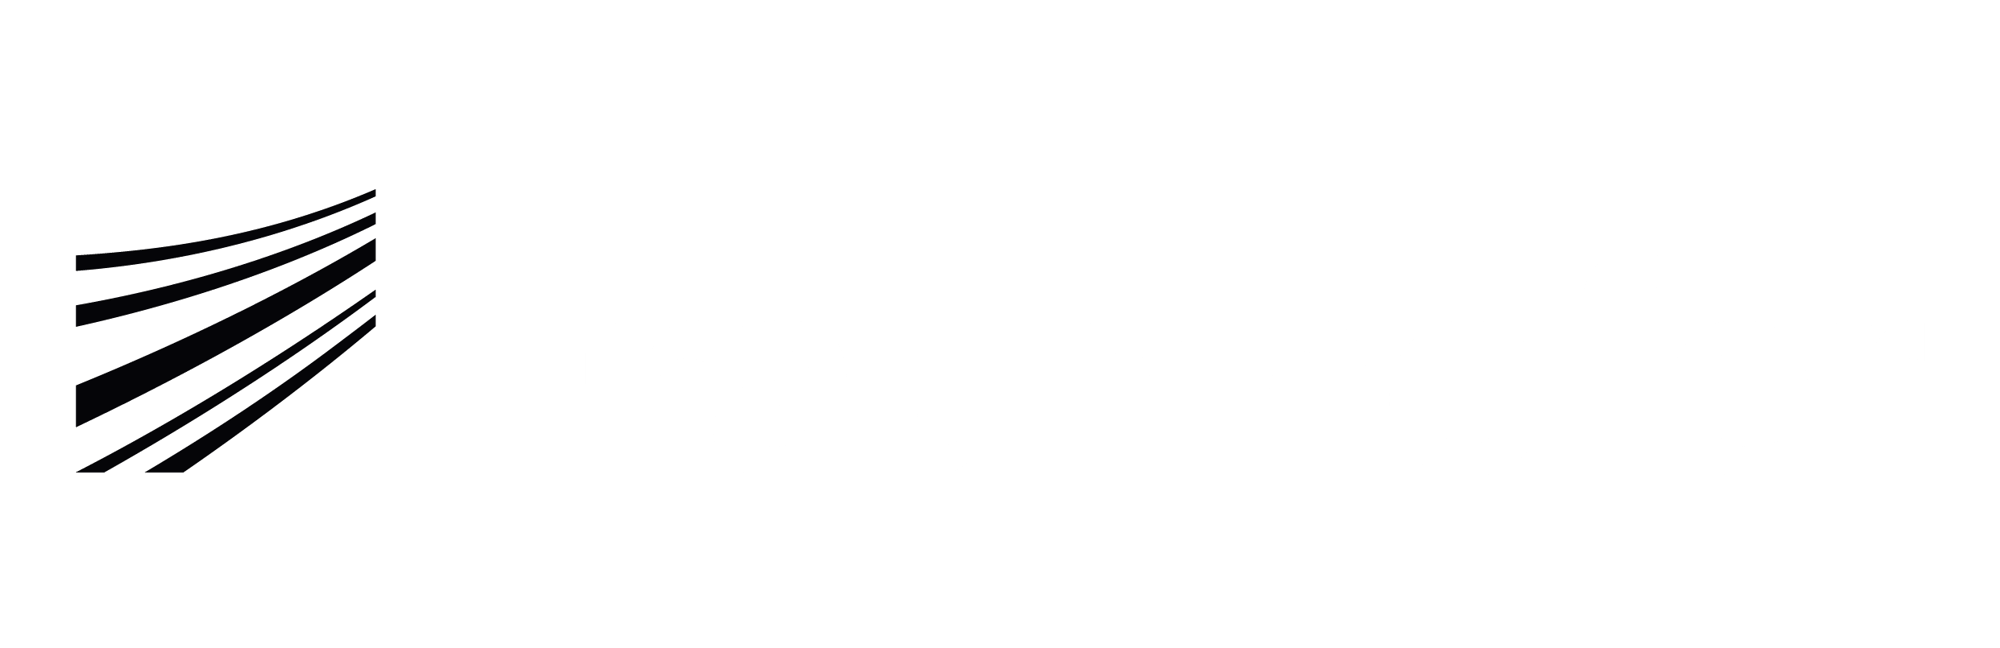 Fraunhofer_Weißgrau